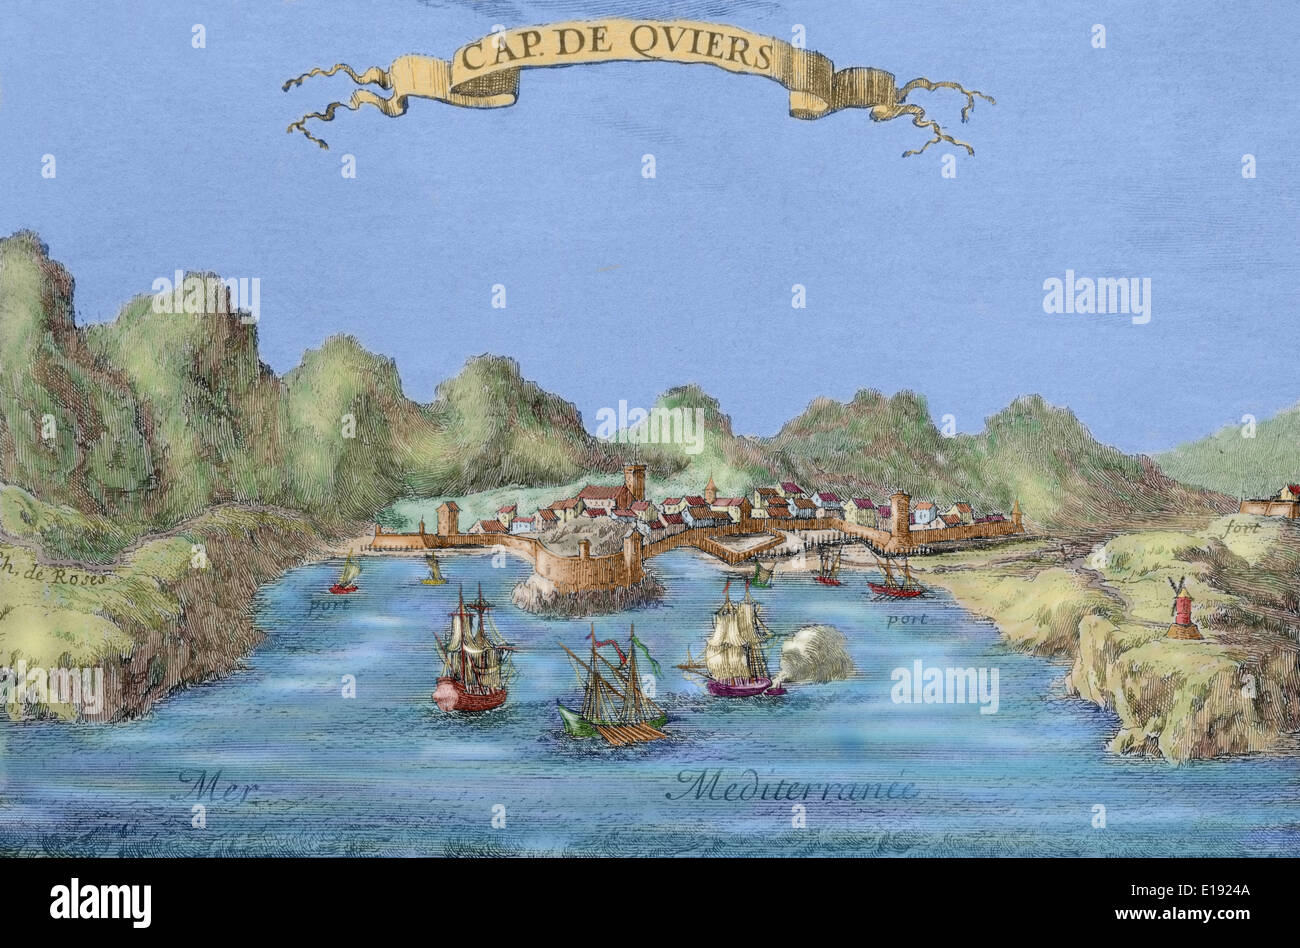 Spagna. Cap de Quiers (Cadaques). Incisione made​during negoziati del Trattato dei Pirenei, 1659. Foto Stock